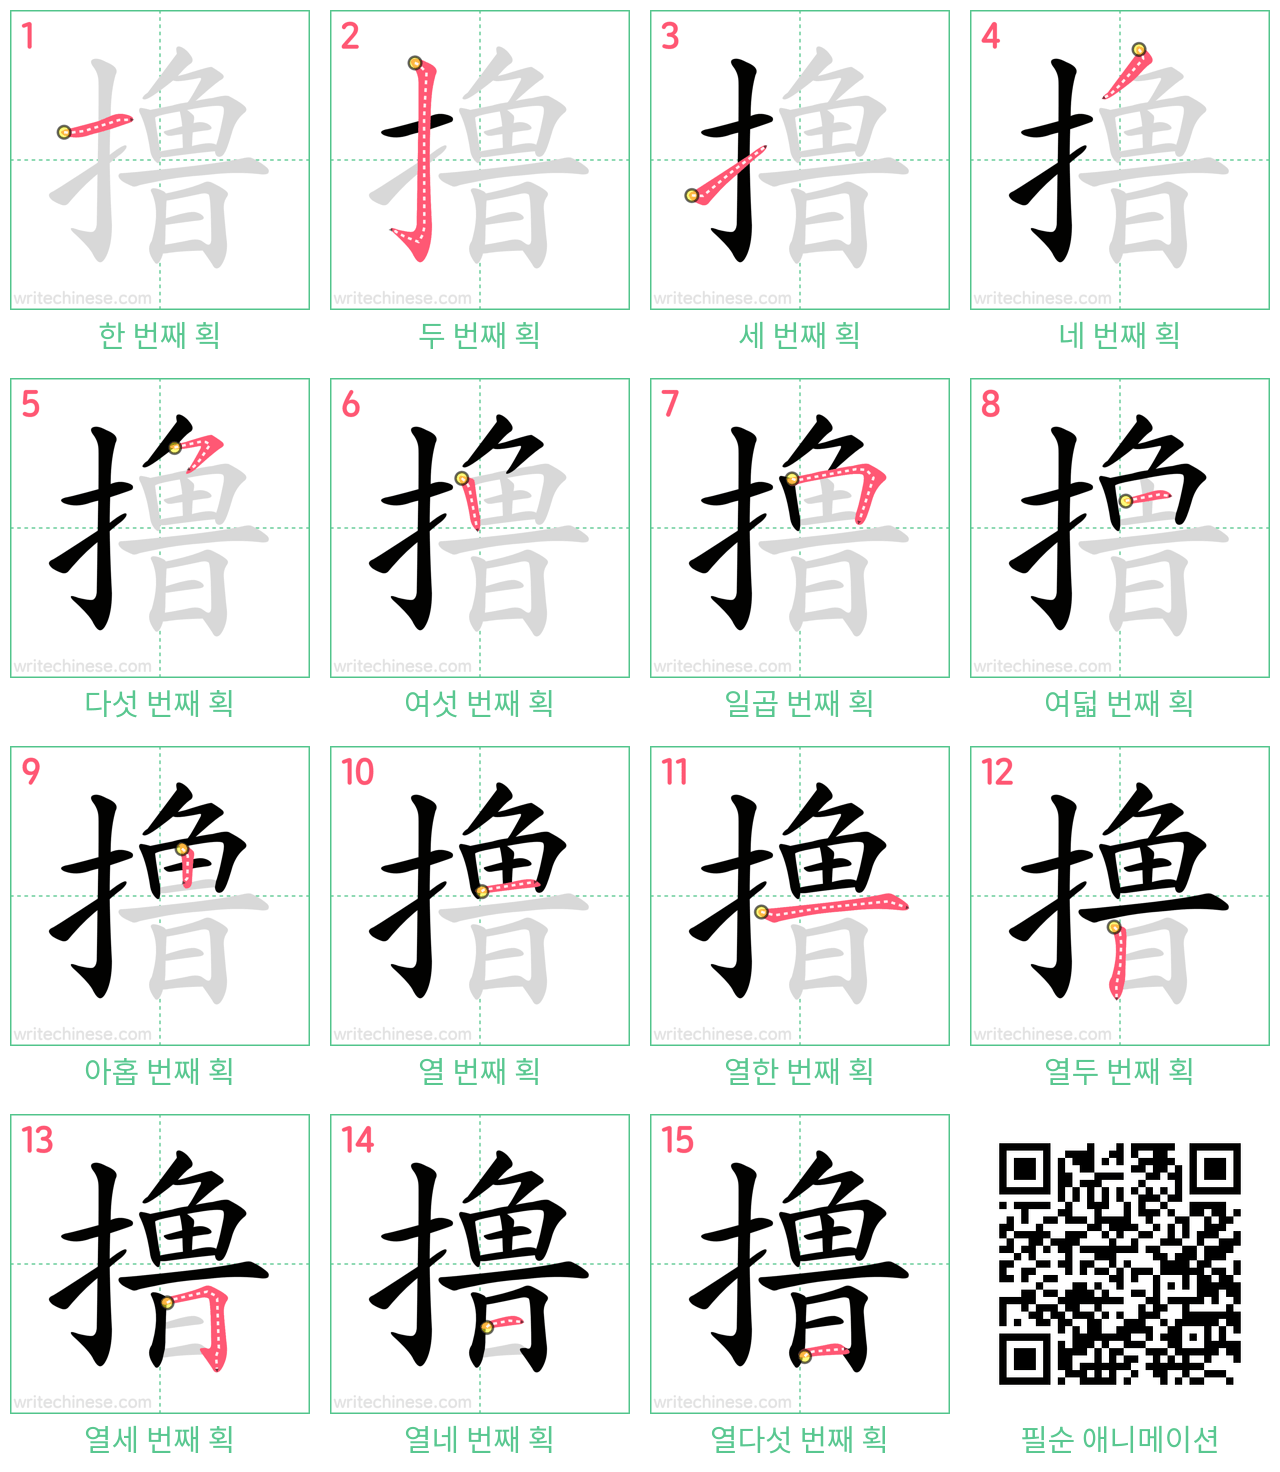 撸 step-by-step stroke order diagrams